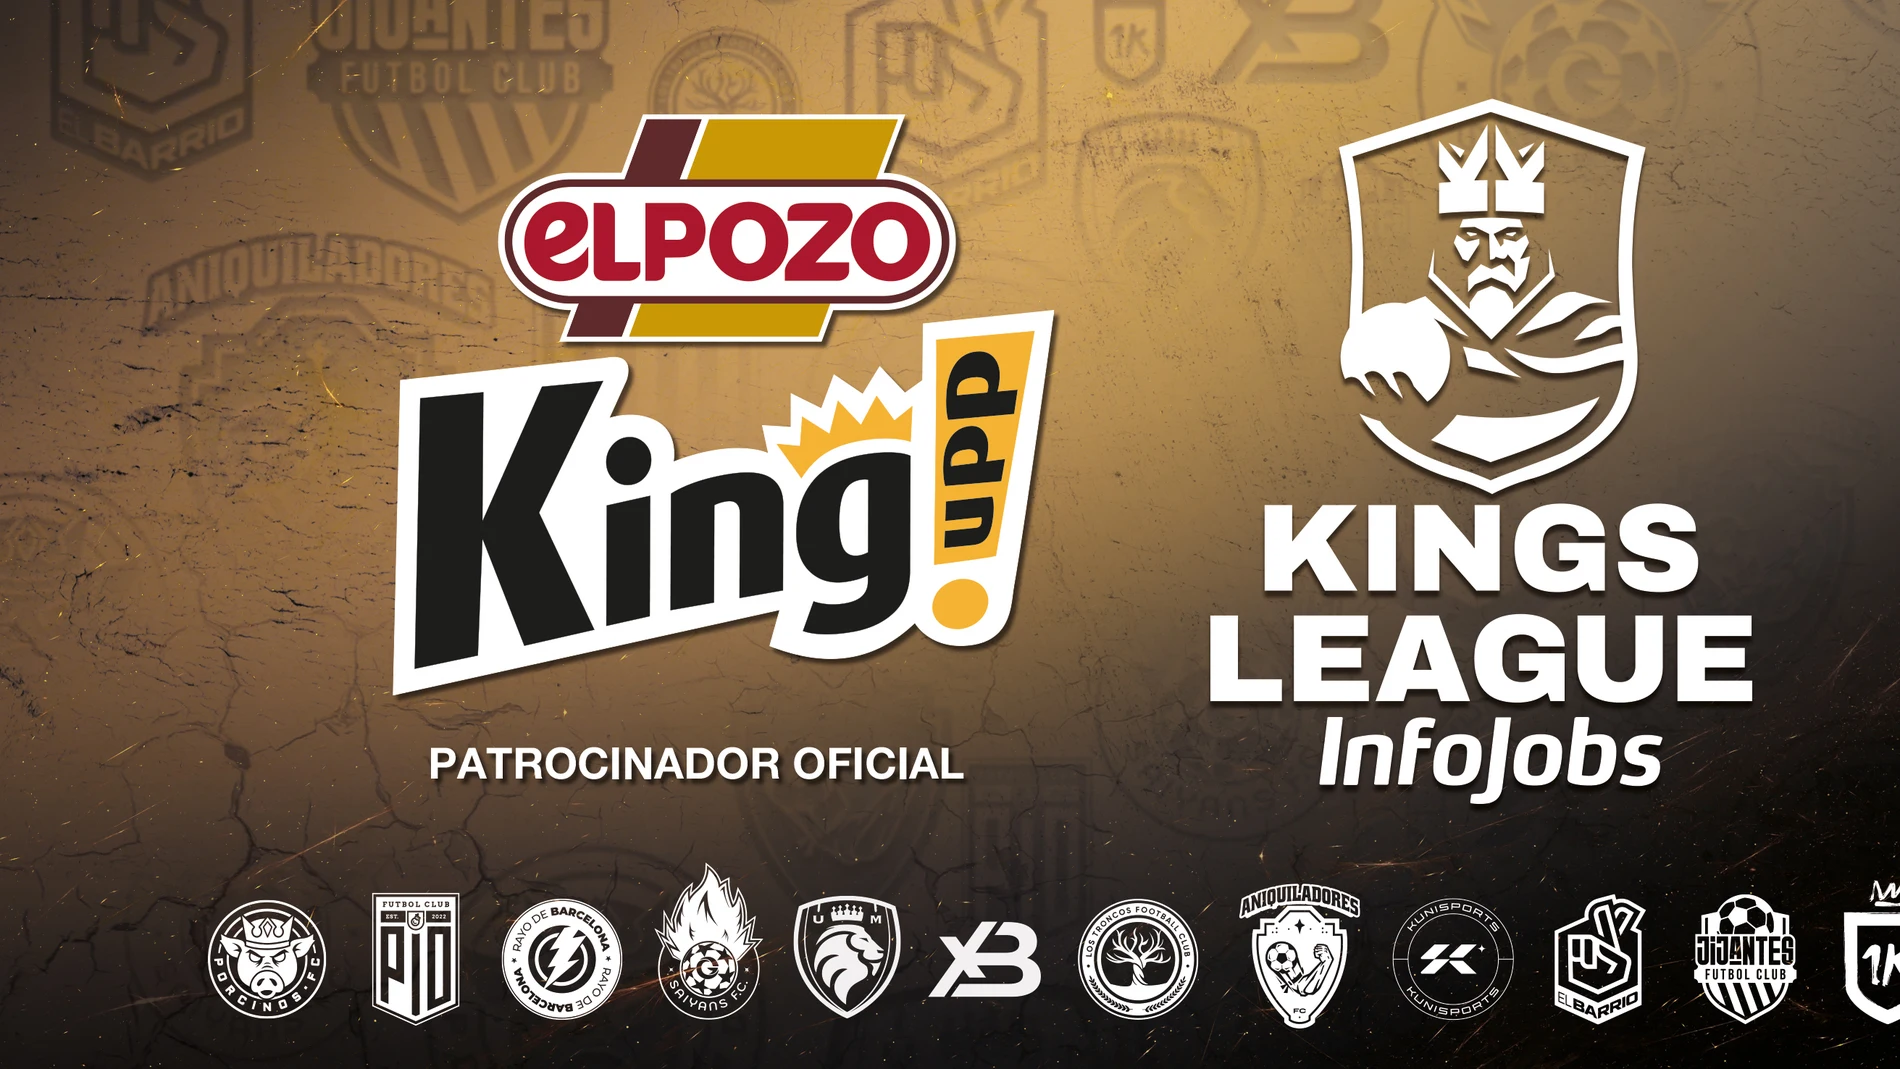 ElPOZO KING se une al show de la Kings League InfoJobs